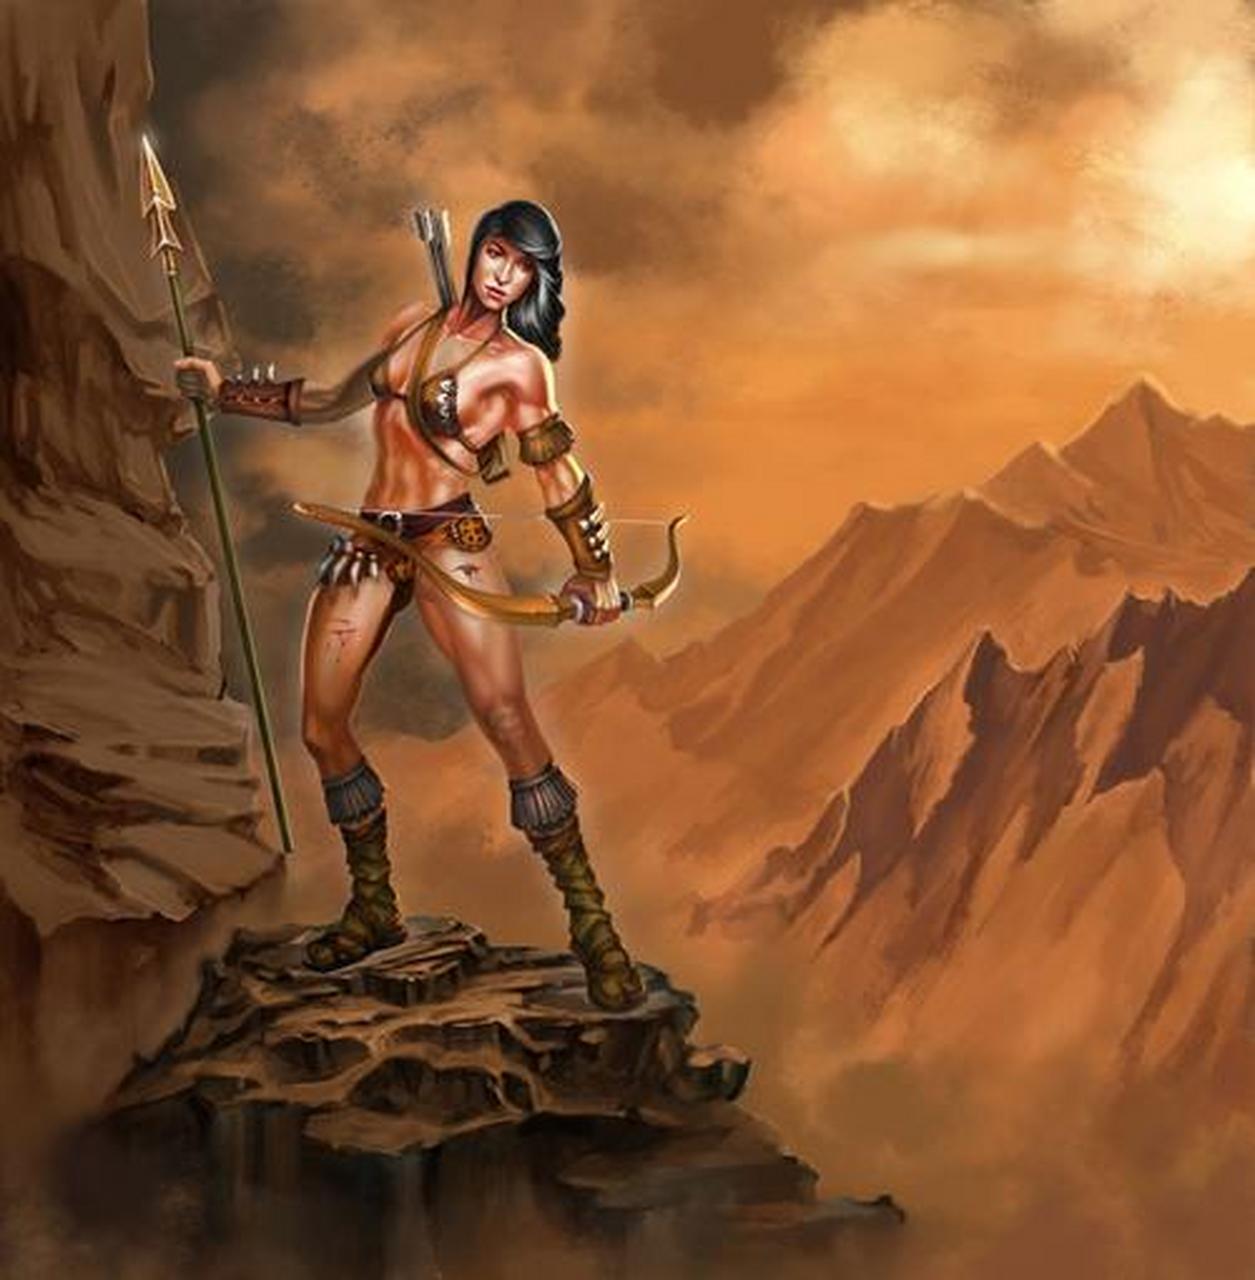 古希腊神话中的亚马逊女战士的传说可以追溯到公元前8世纪至公元前4世